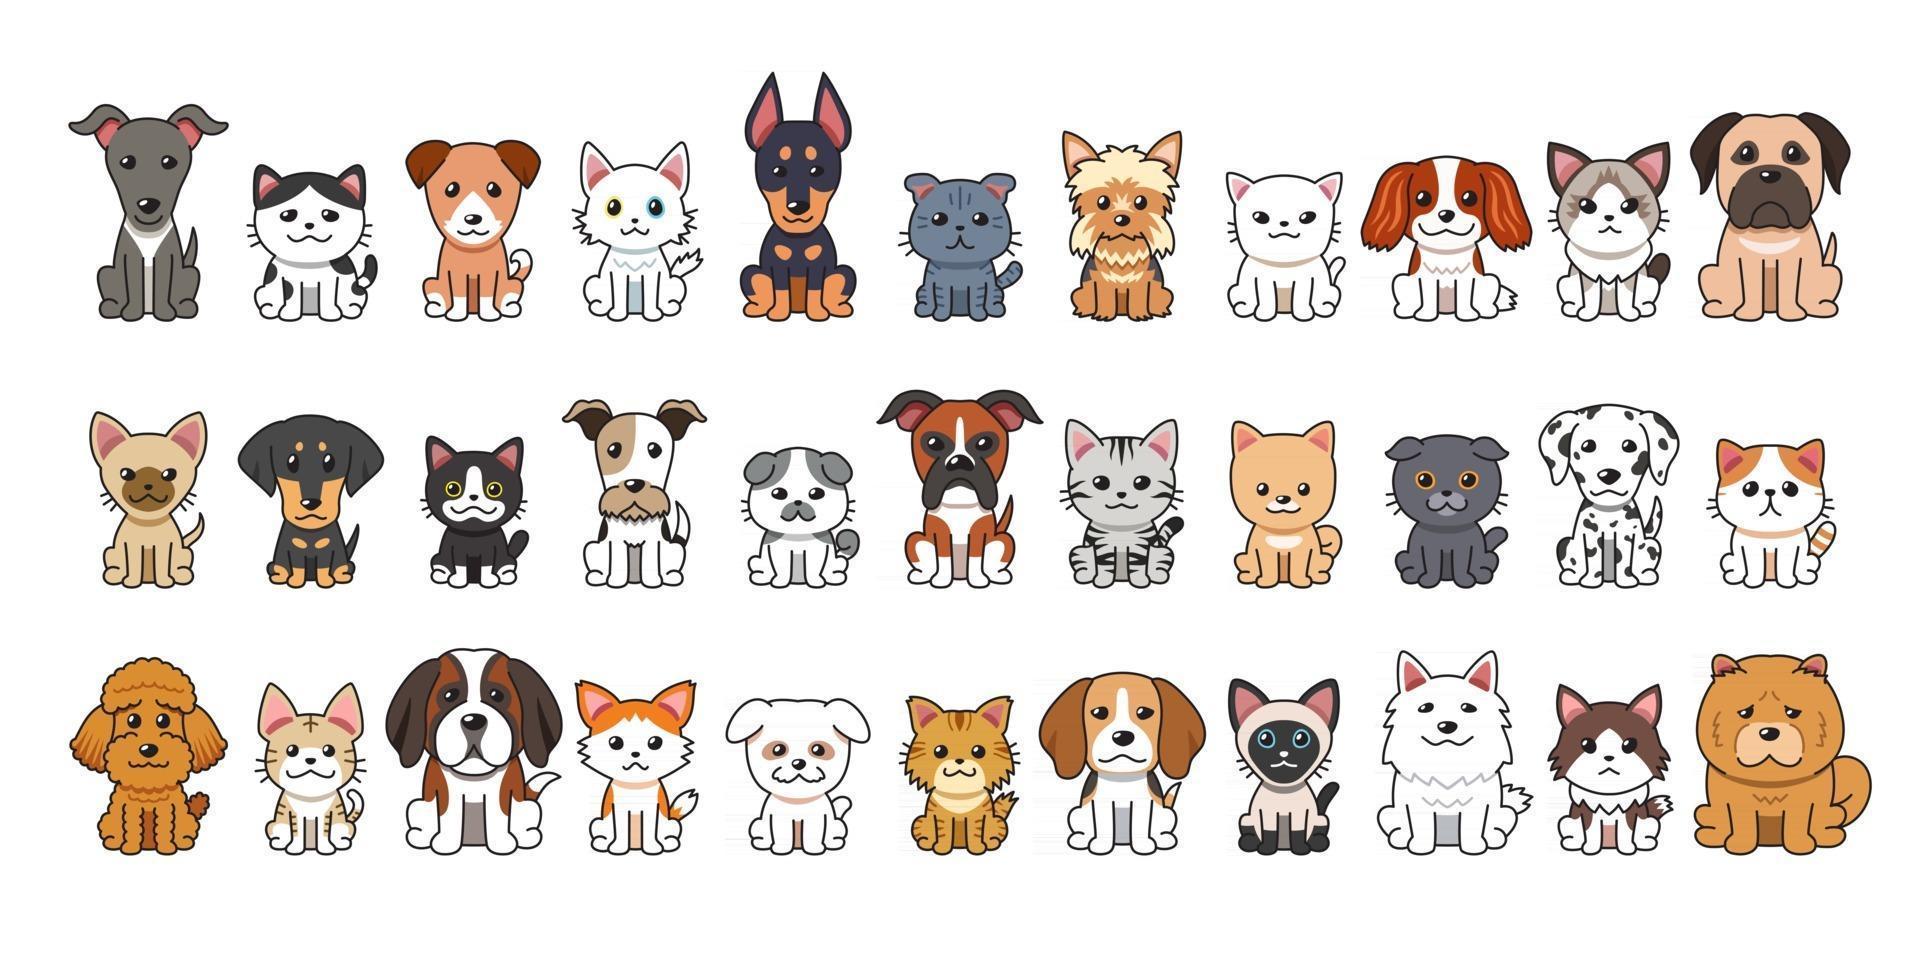 diversi tipi di gatti e cani dei cartoni animati vettoriali